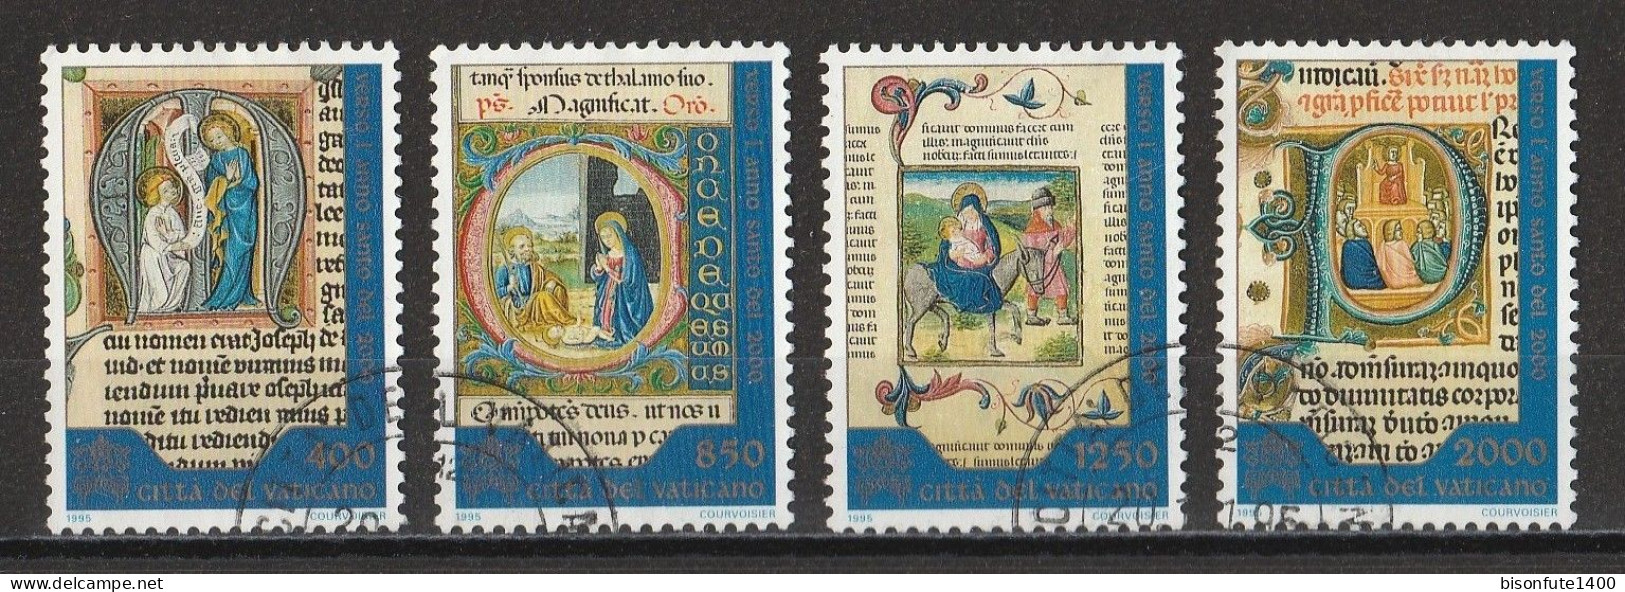 Vatican 1995 : Timbres Yvert & Tellier N° 1025 - 1026 - 1027 Et 1028 Oblitérés - Gebruikt